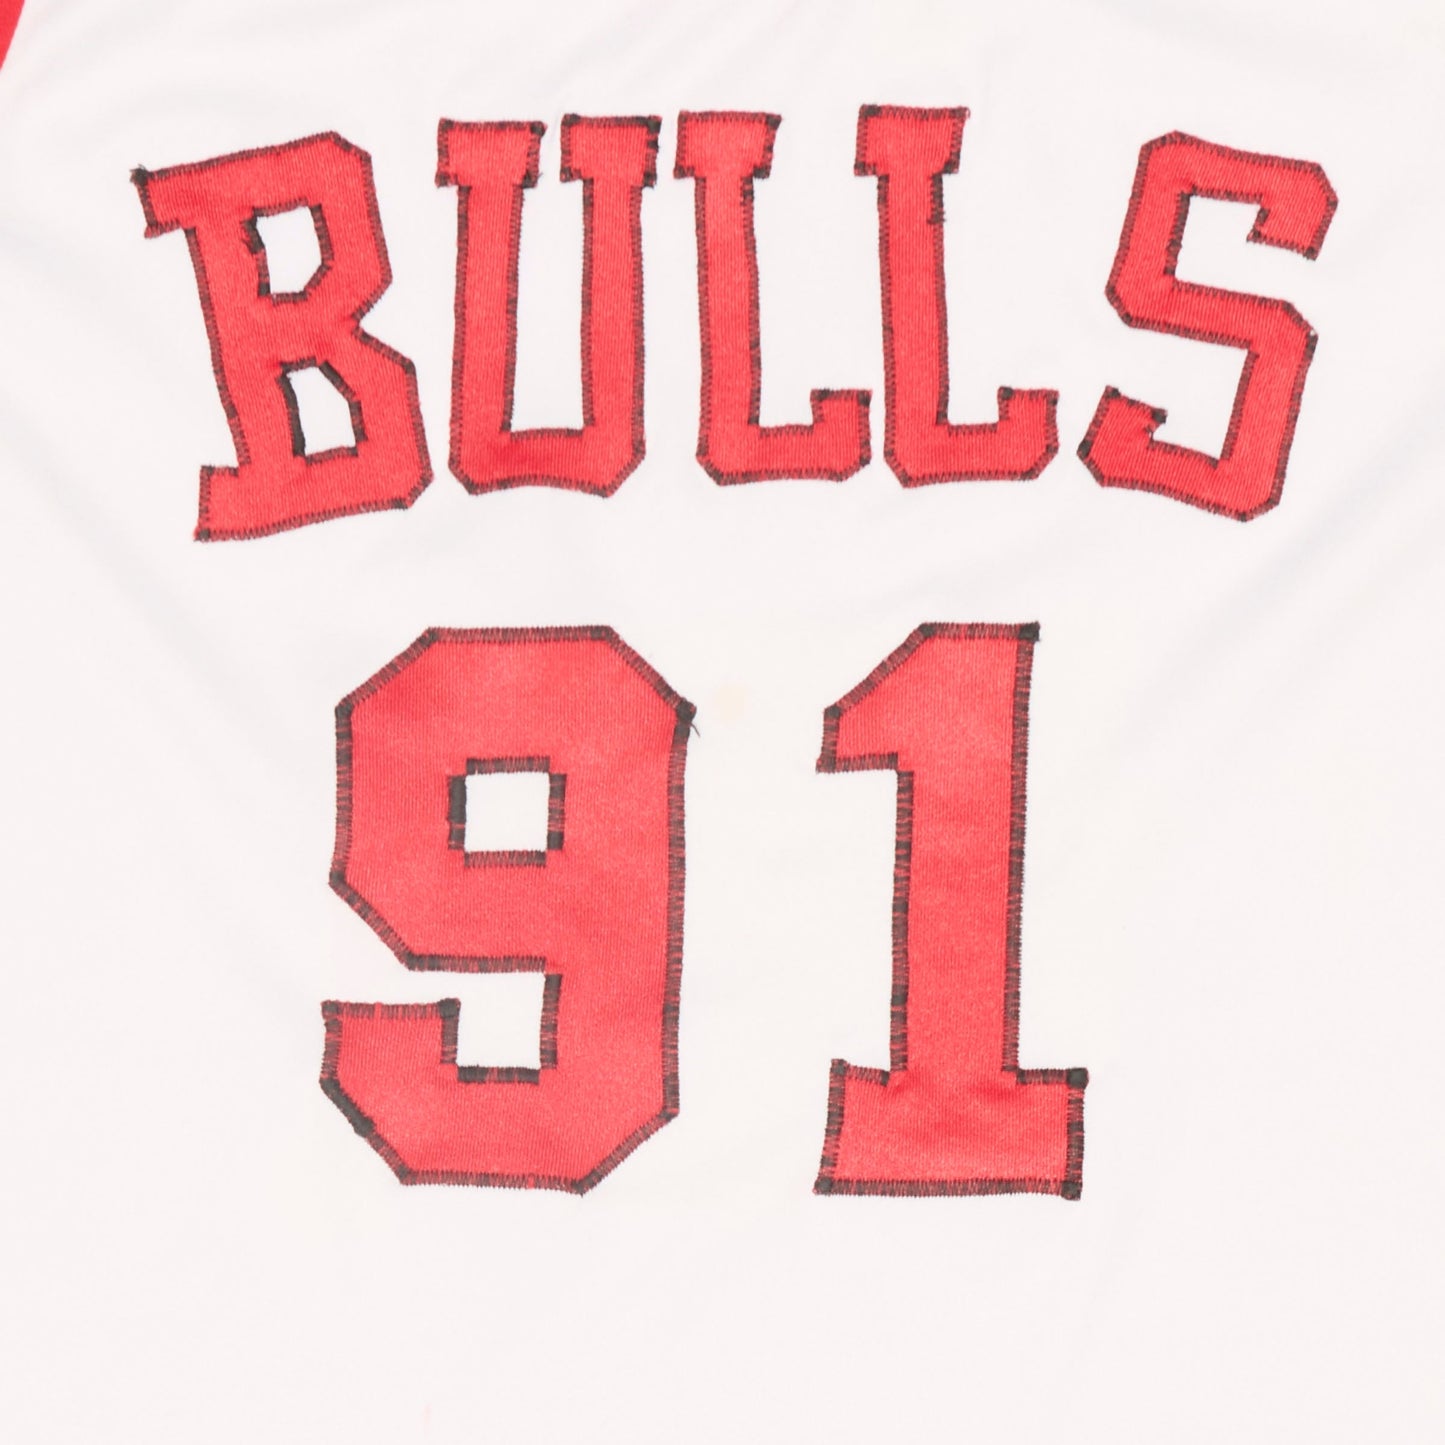 Replica Bulls Spellout Sleeveless Sports Shirt - XS